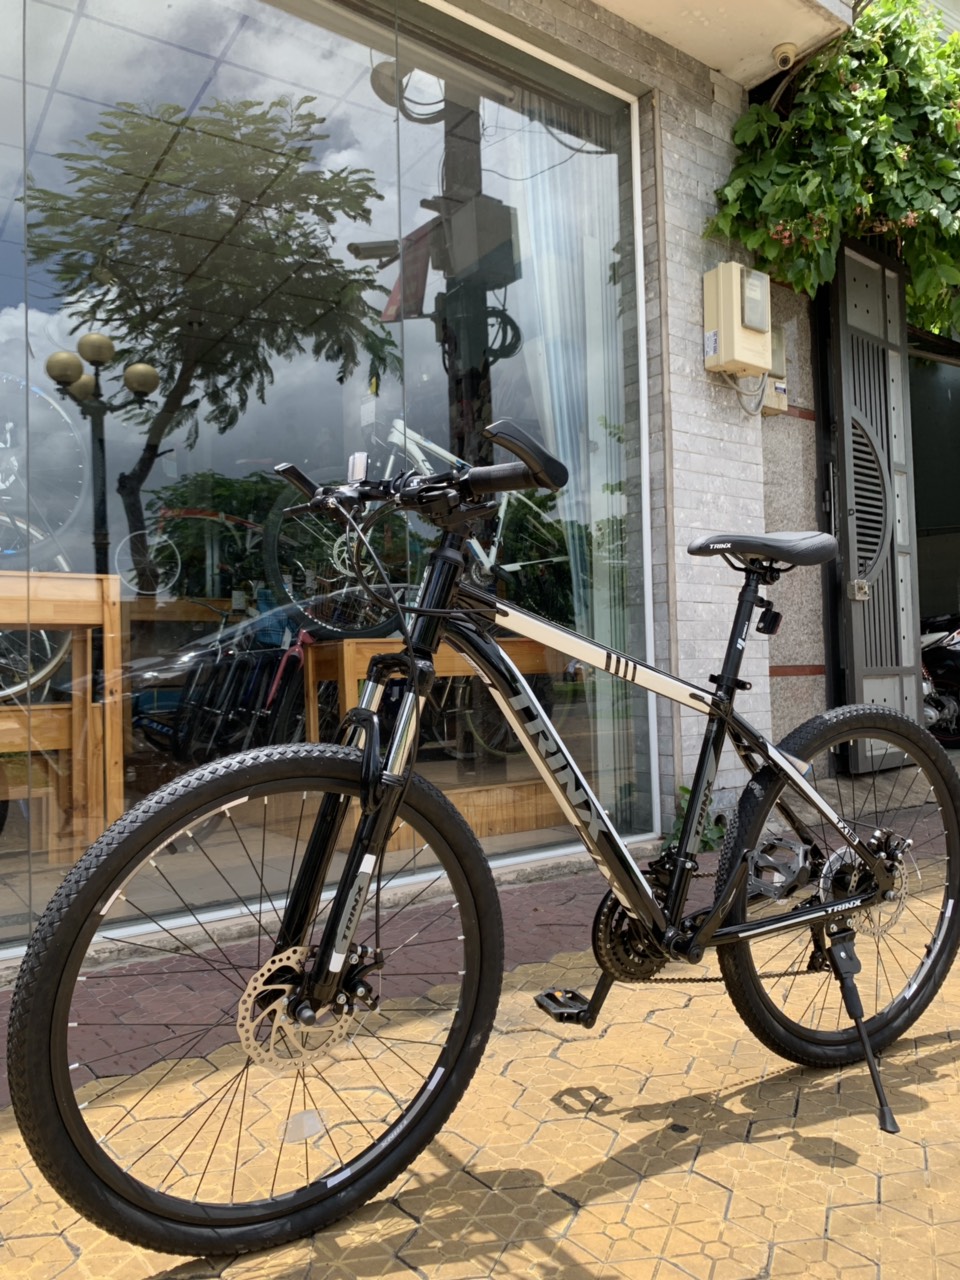 Xe đạp địa hình TrinX TX16 2019 Black White